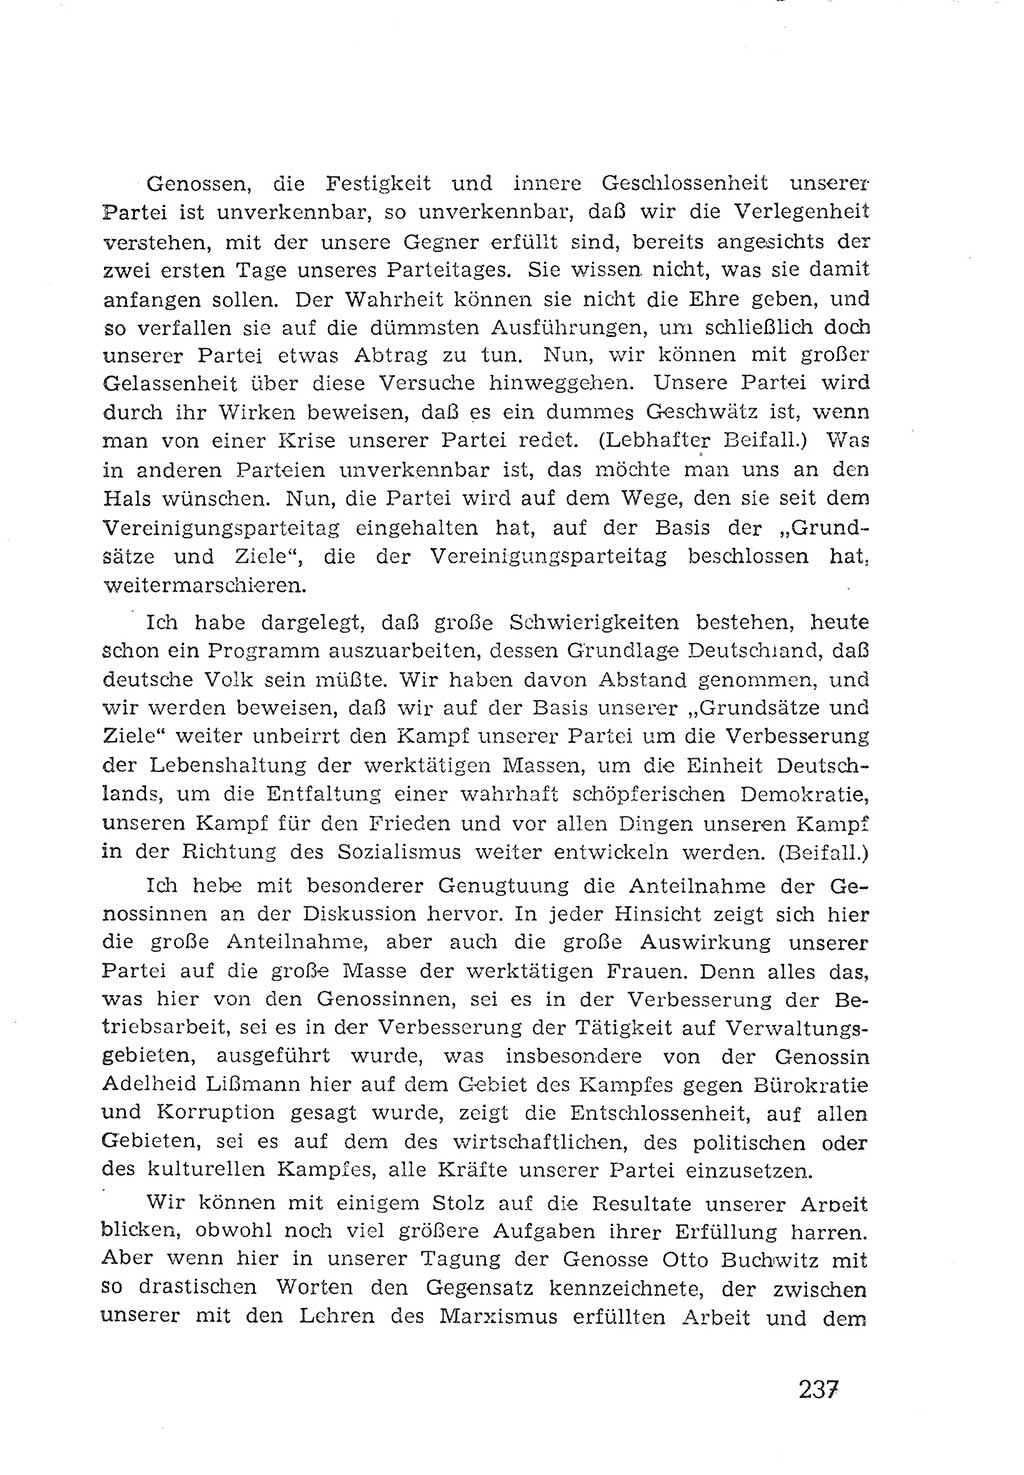 Protokoll der Verhandlungen des 2. Parteitages der Sozialistischen Einheitspartei Deutschlands (SED) [Sowjetische Besatzungszone (SBZ) Deutschlands] 1947, Seite 237 (Prot. Verh. 2. PT SED SBZ Dtl. 1947, S. 237)